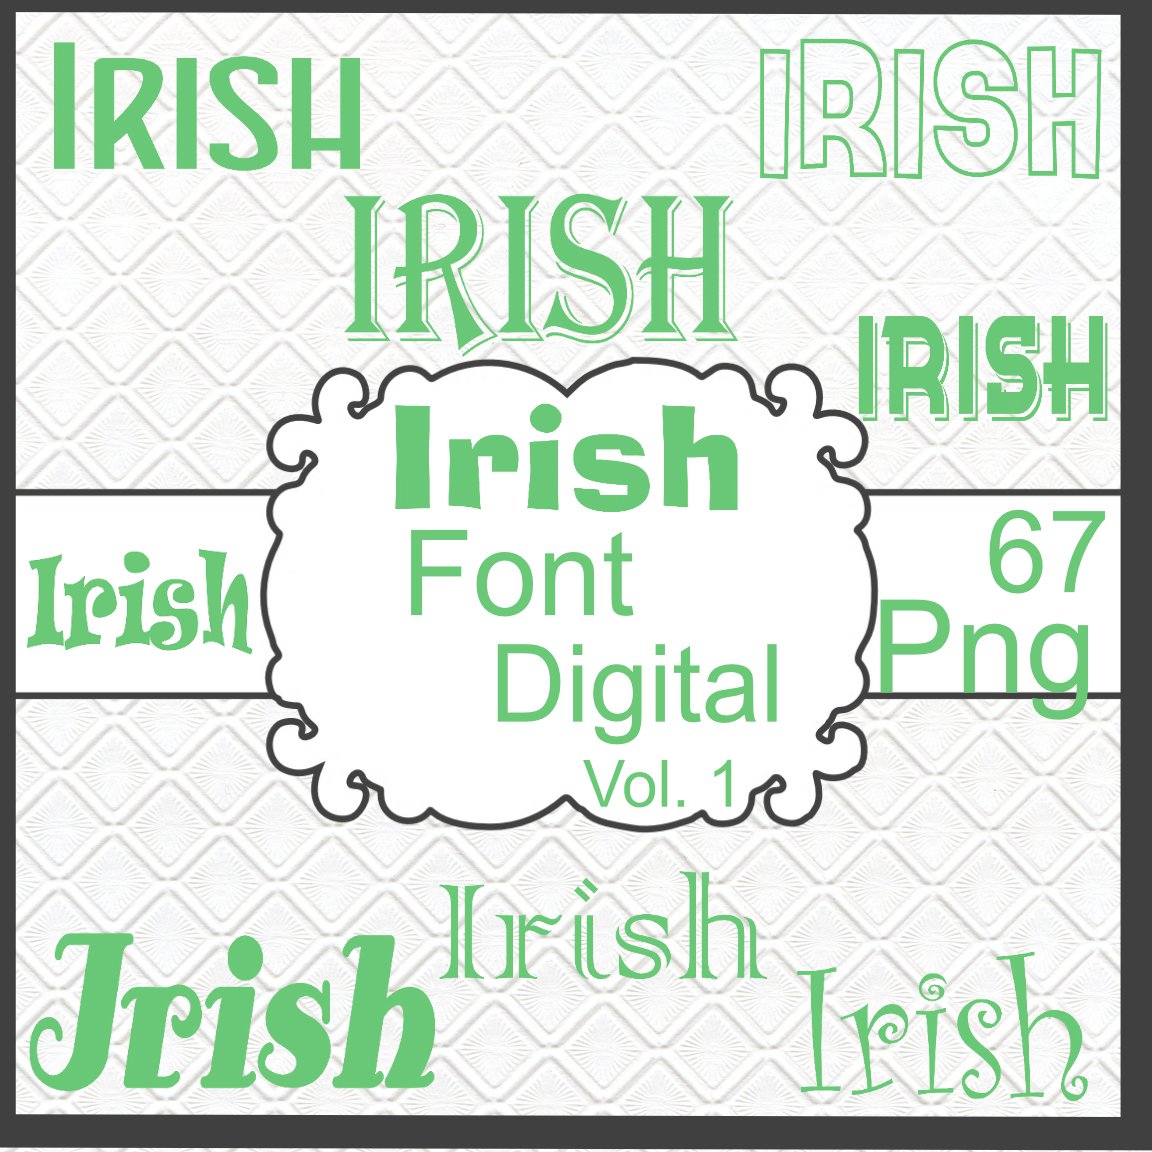 Irish Font Digital Vol. 1